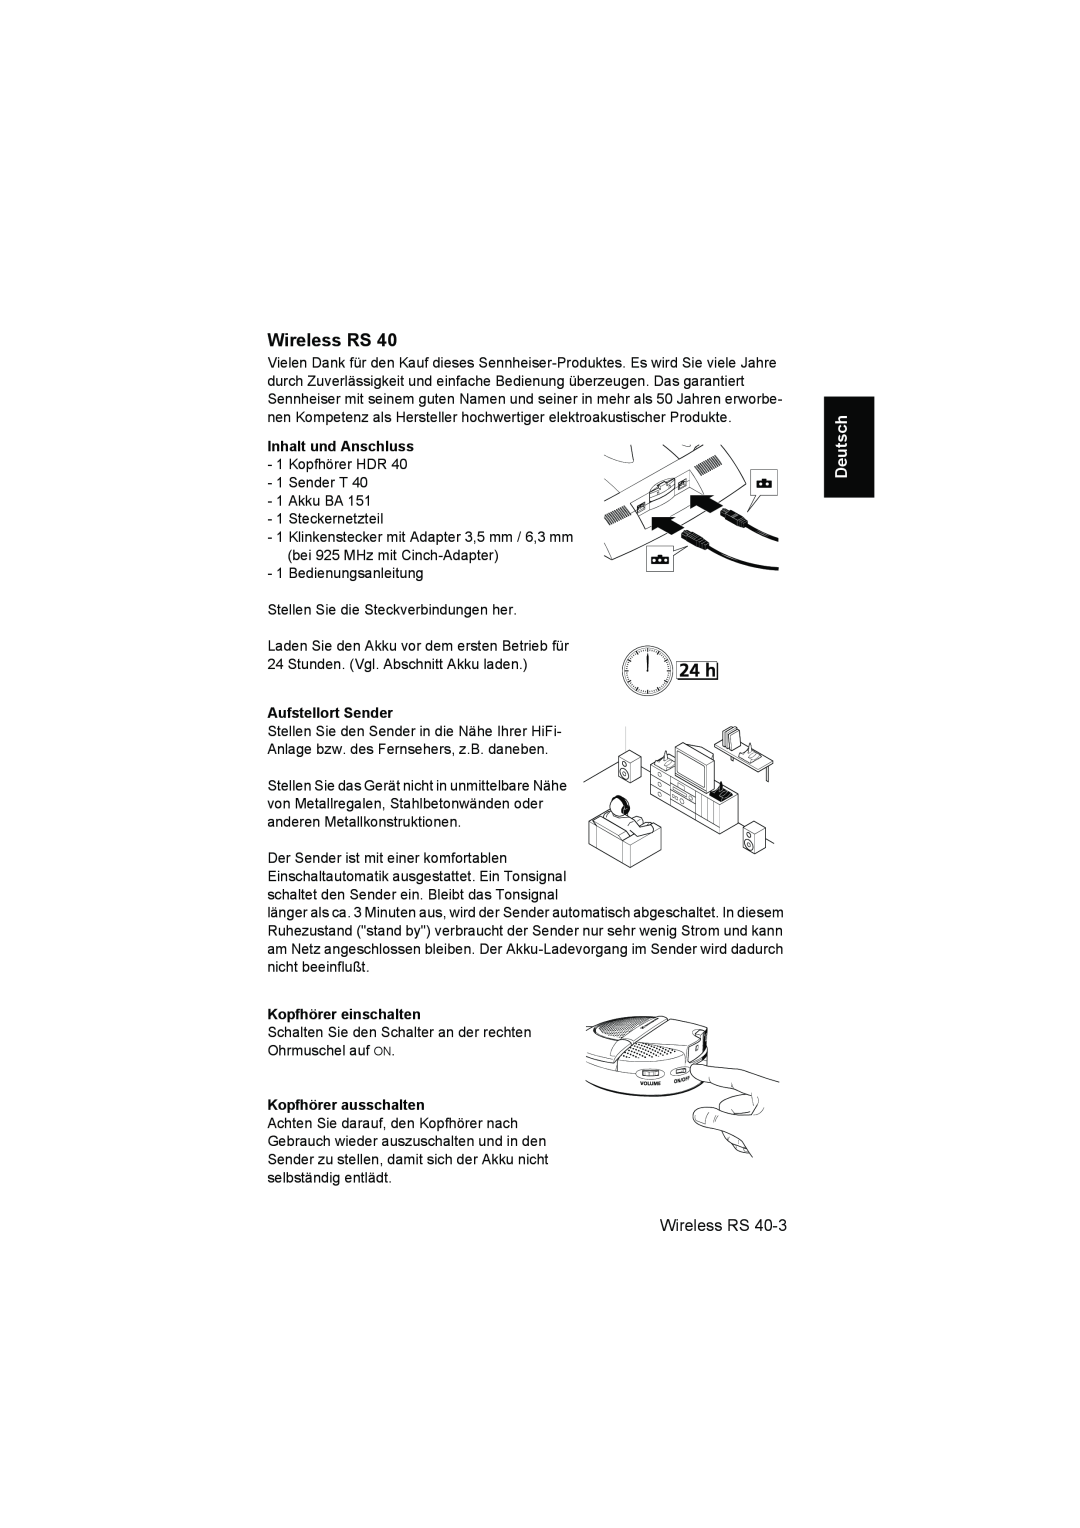 Sennheiser RS 40 instruction manual Wireless RS, Deutsch, Aufstellort Sender, Kopfhörer einschalten, Kopfhörer ausschalten 